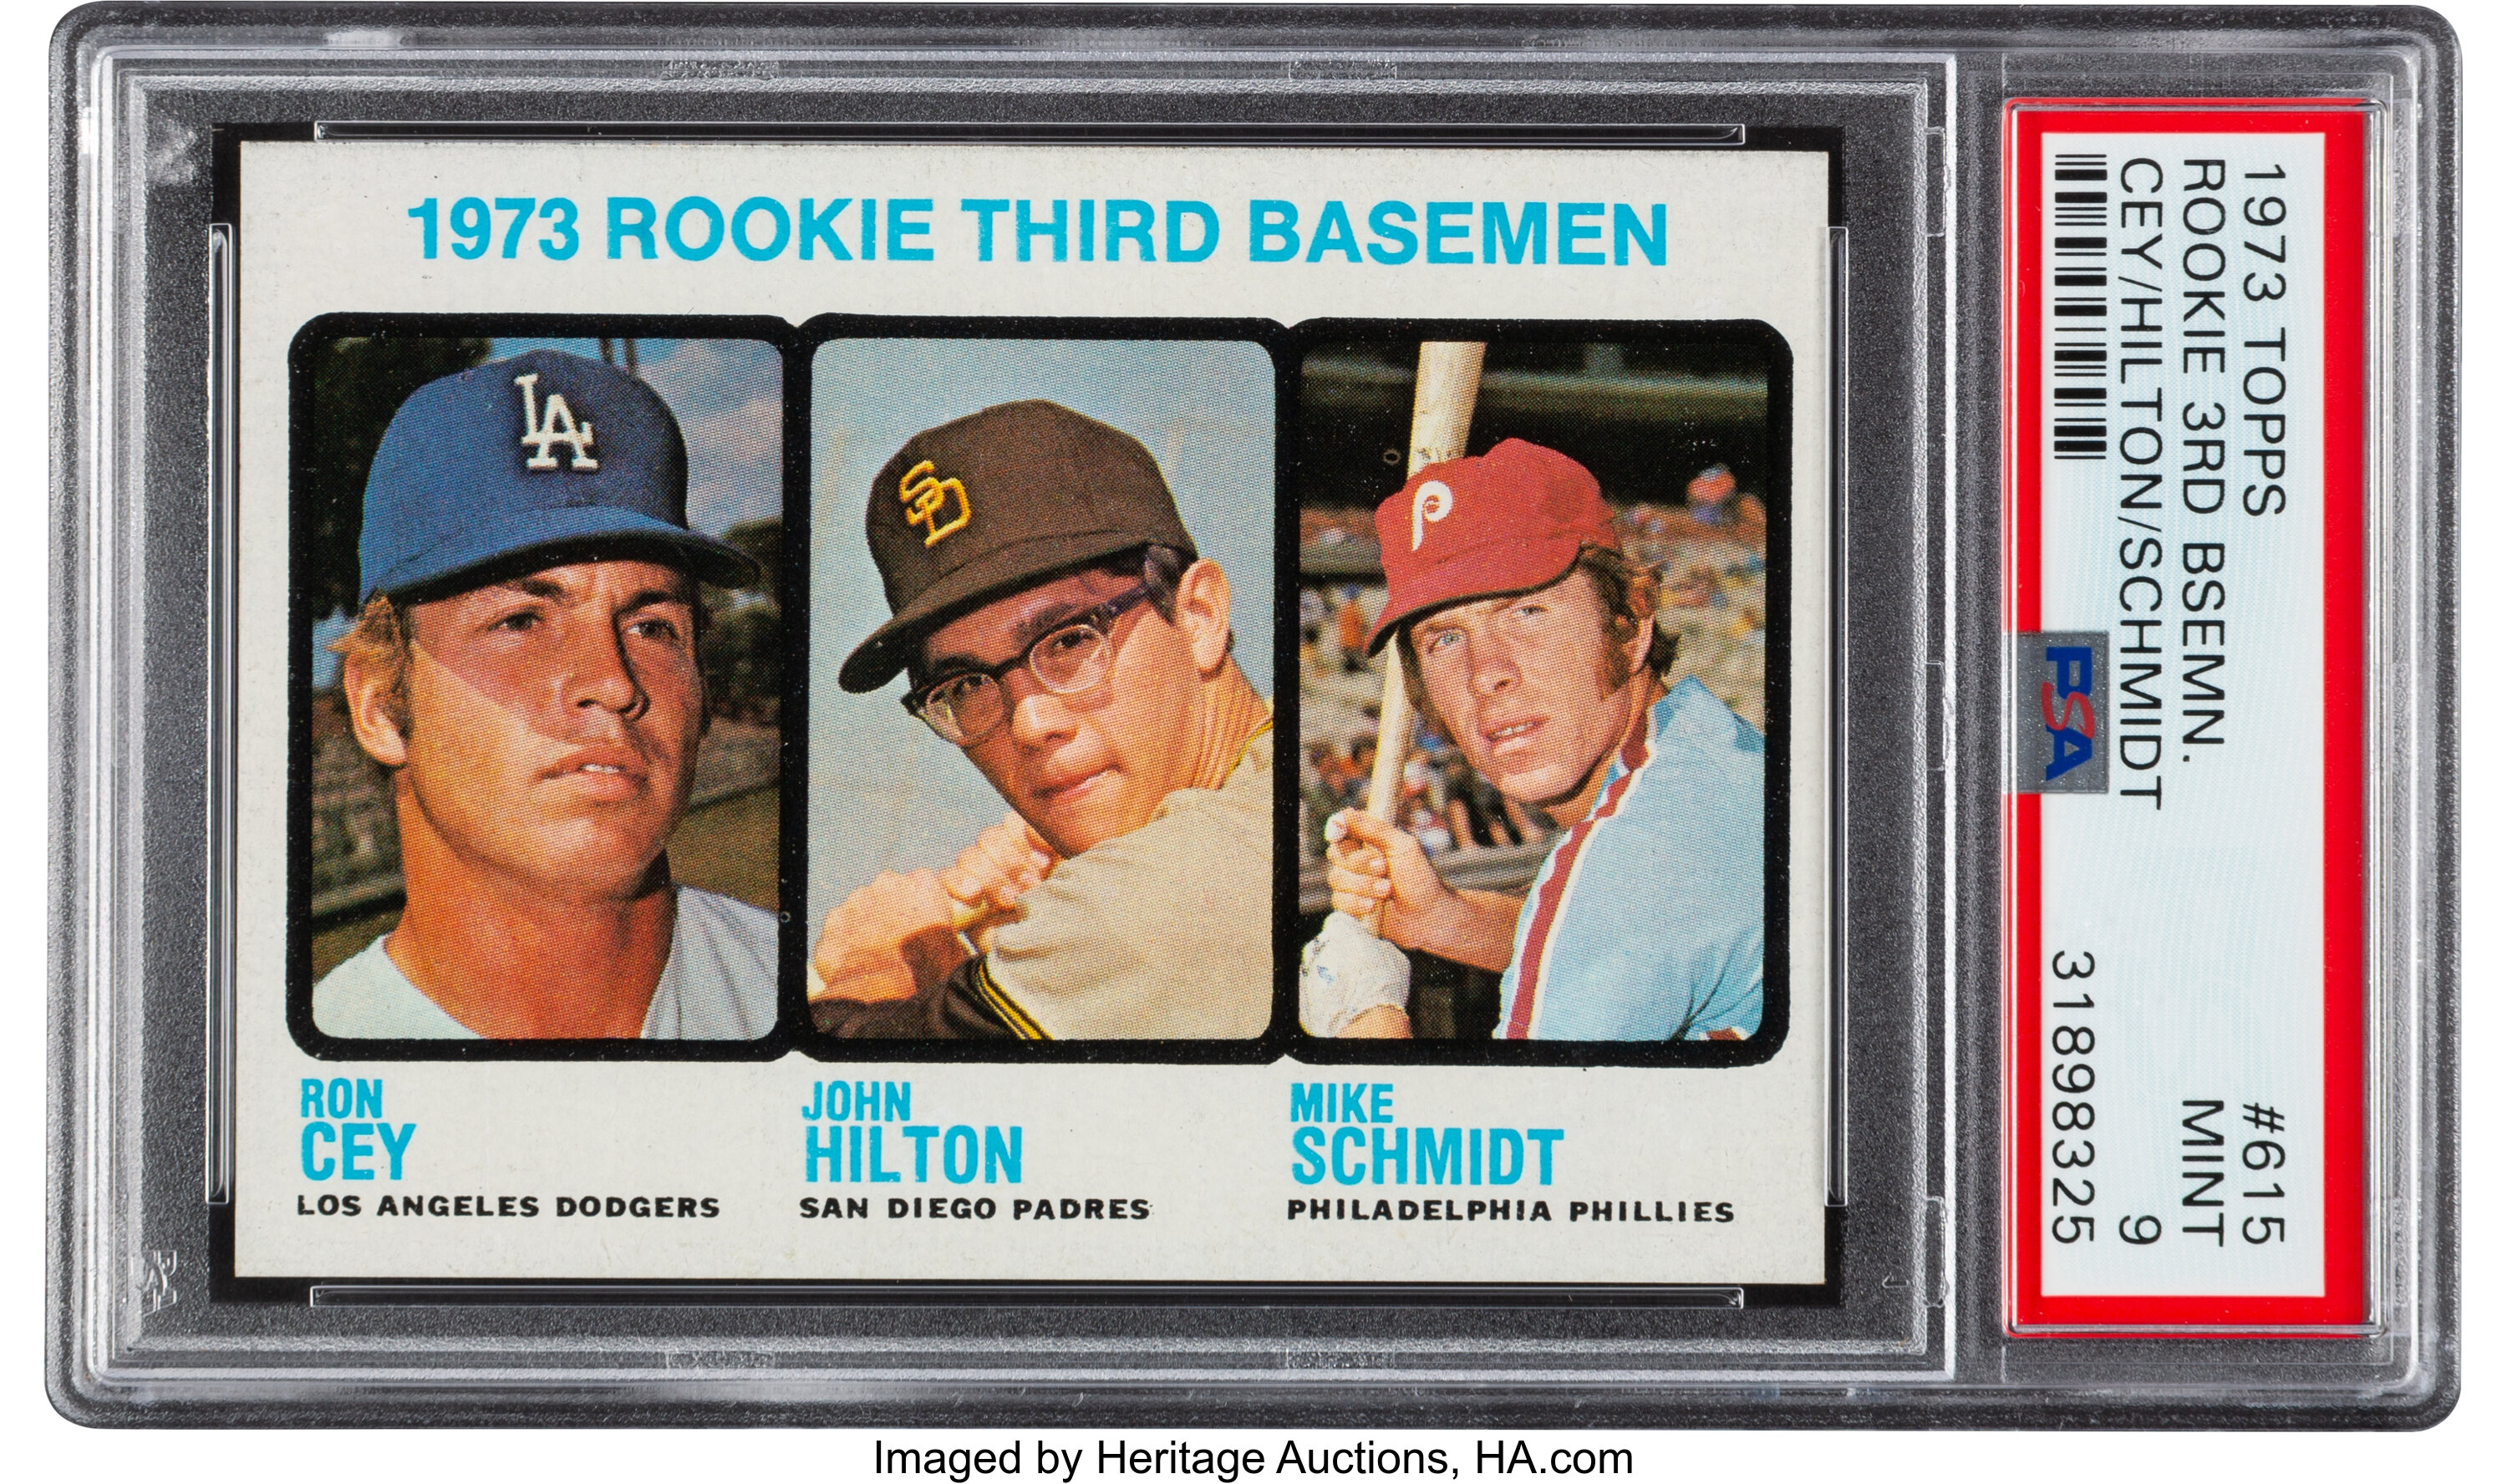 1973 Topps #615 Rookie Third Basemen Mike Schmidt / Ron Cey / John Hilton